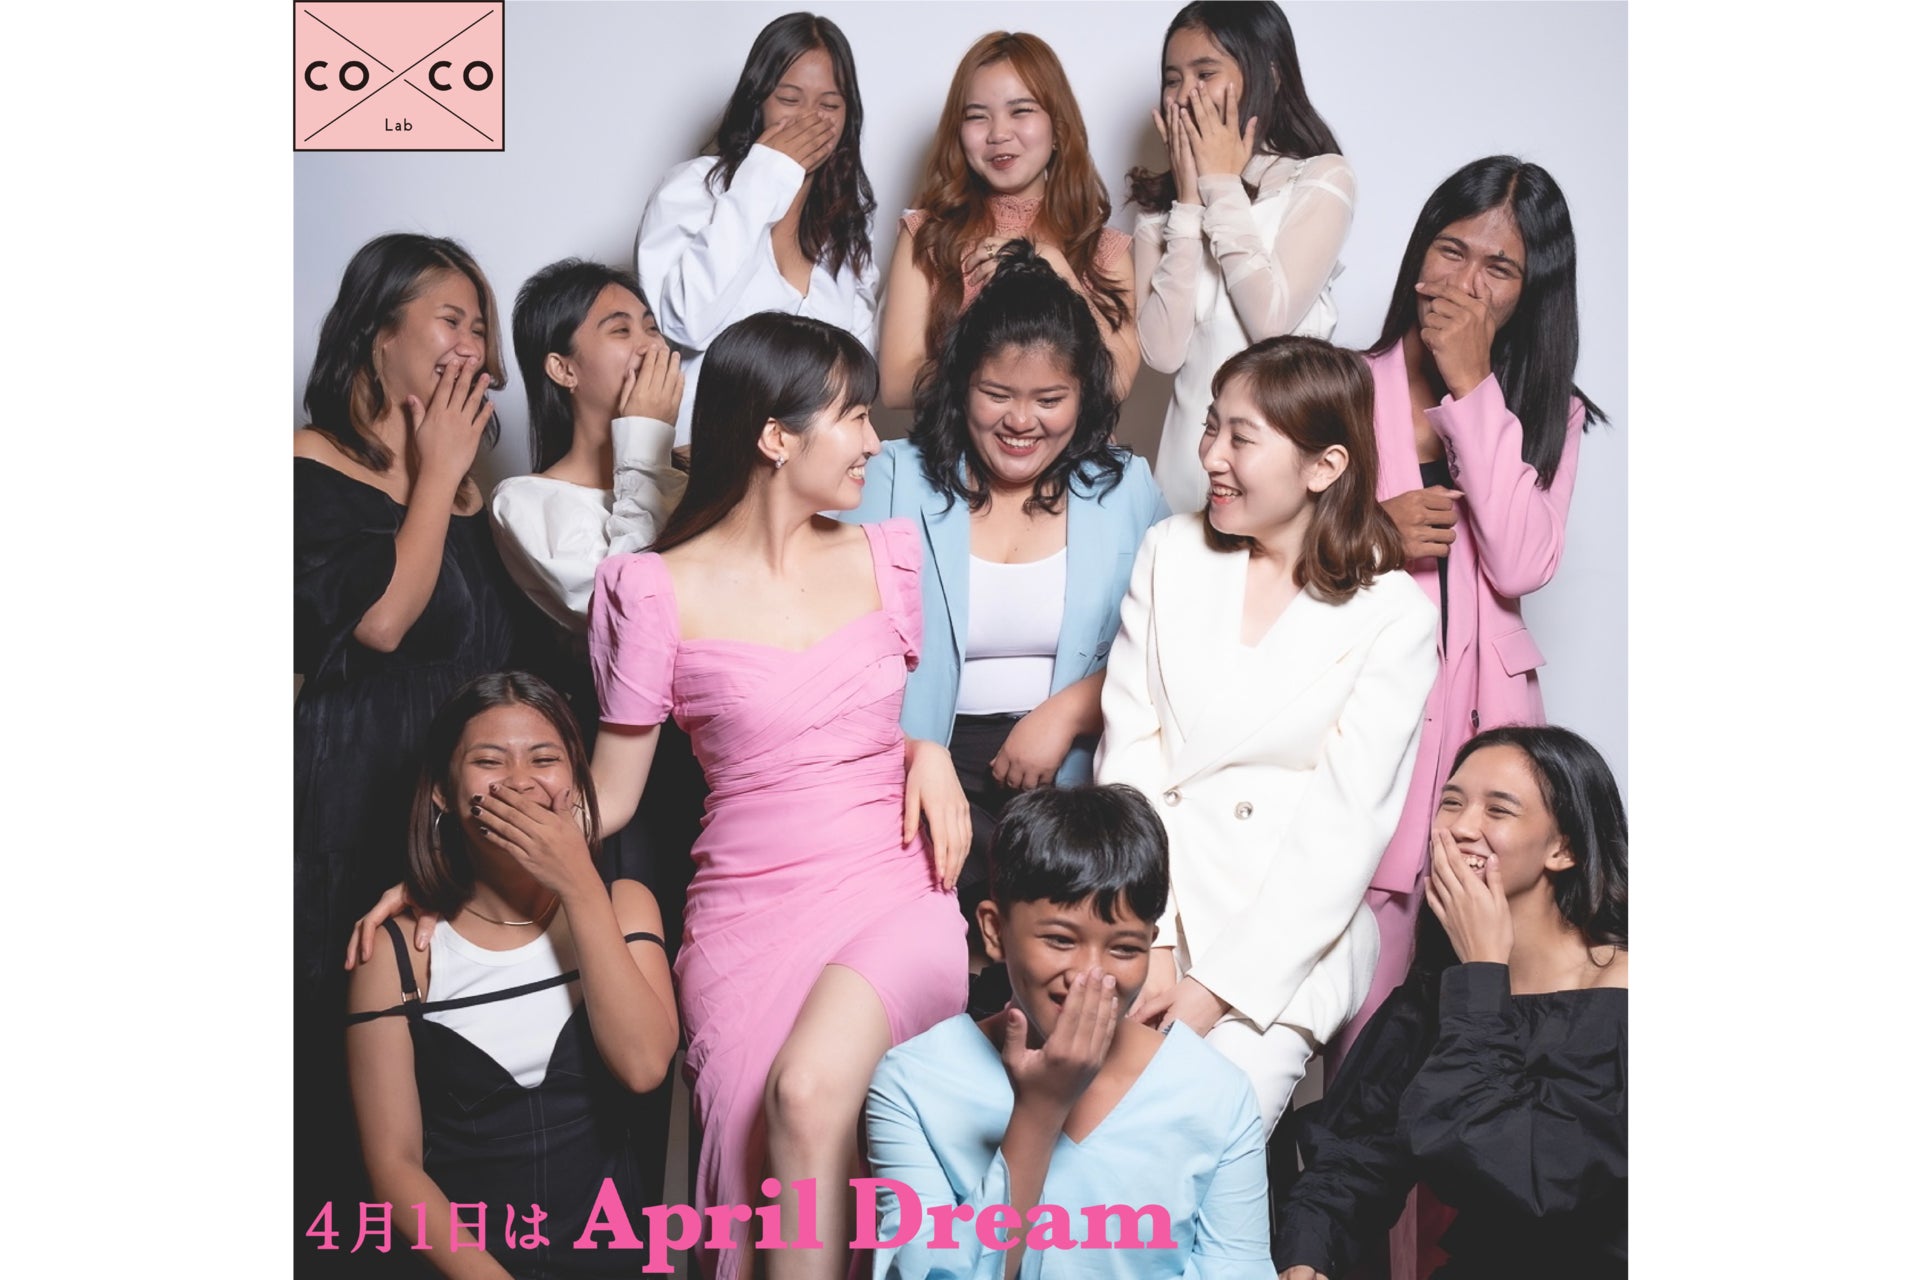 【日系初】フィリピンのファッションスクール「coxco Lab」が目指す、ファッションで社会貢献を志す生徒10名の夢の実現のサブ画像1